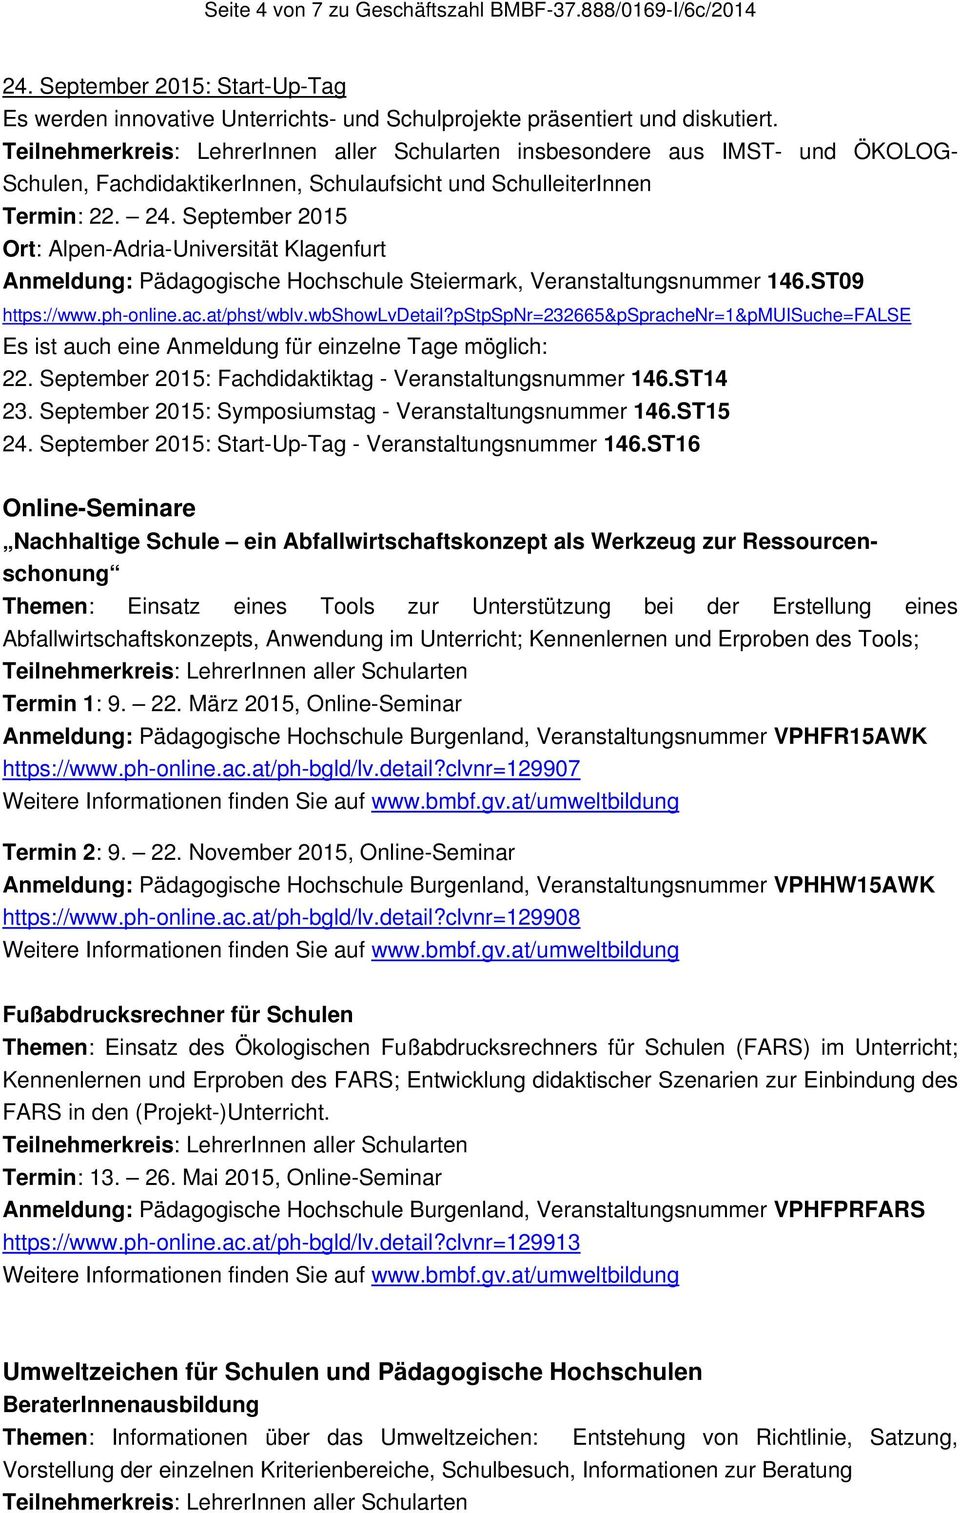 September 2015 Ort: Alpen-Adria-Universität Klagenfurt Anmeldung: Pädagogische Hochschule Steiermark, Veranstaltungsnummer 146.ST09 https://www.ph-online.ac.at/phst/wblv.wbshowlvdetail?